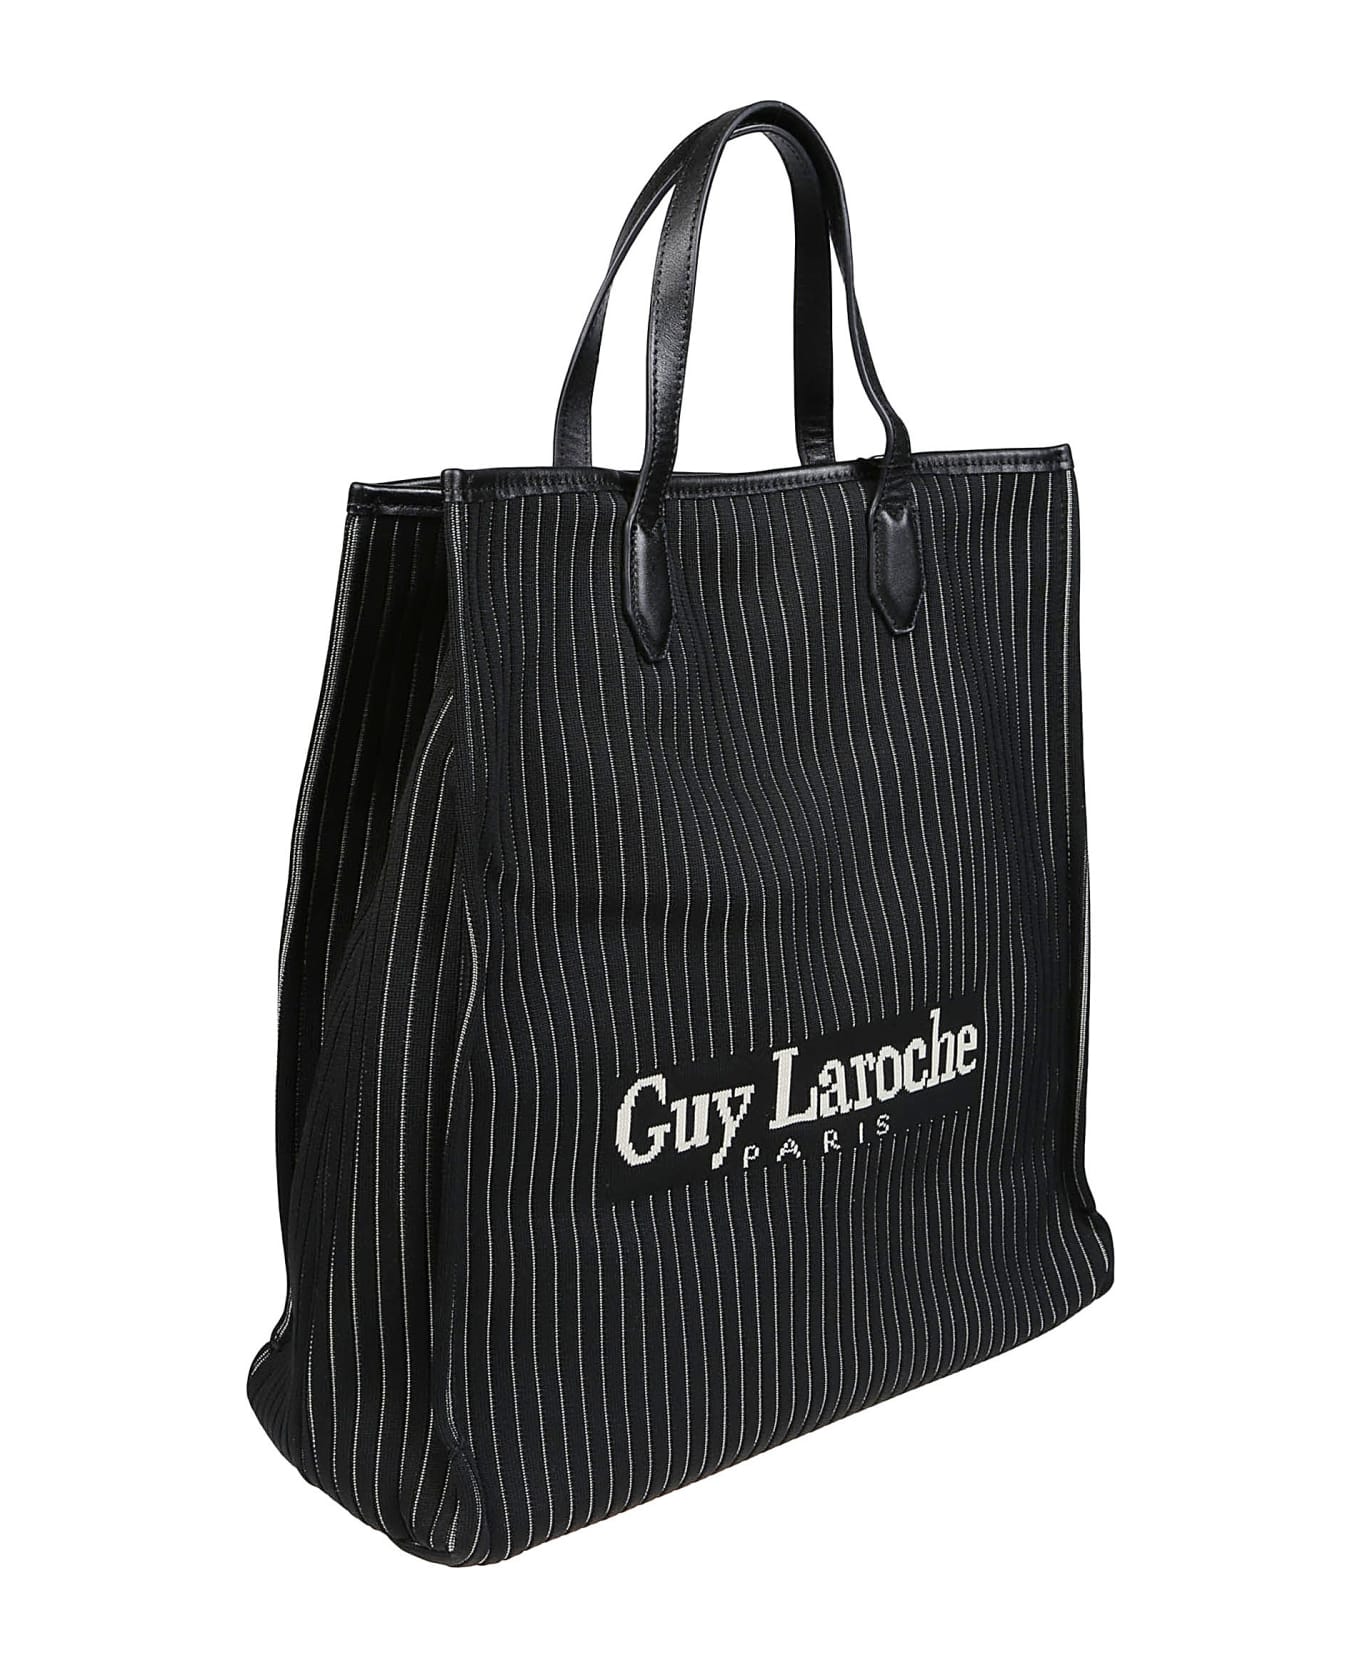 Guy Laroche Large Tote Bag - Black